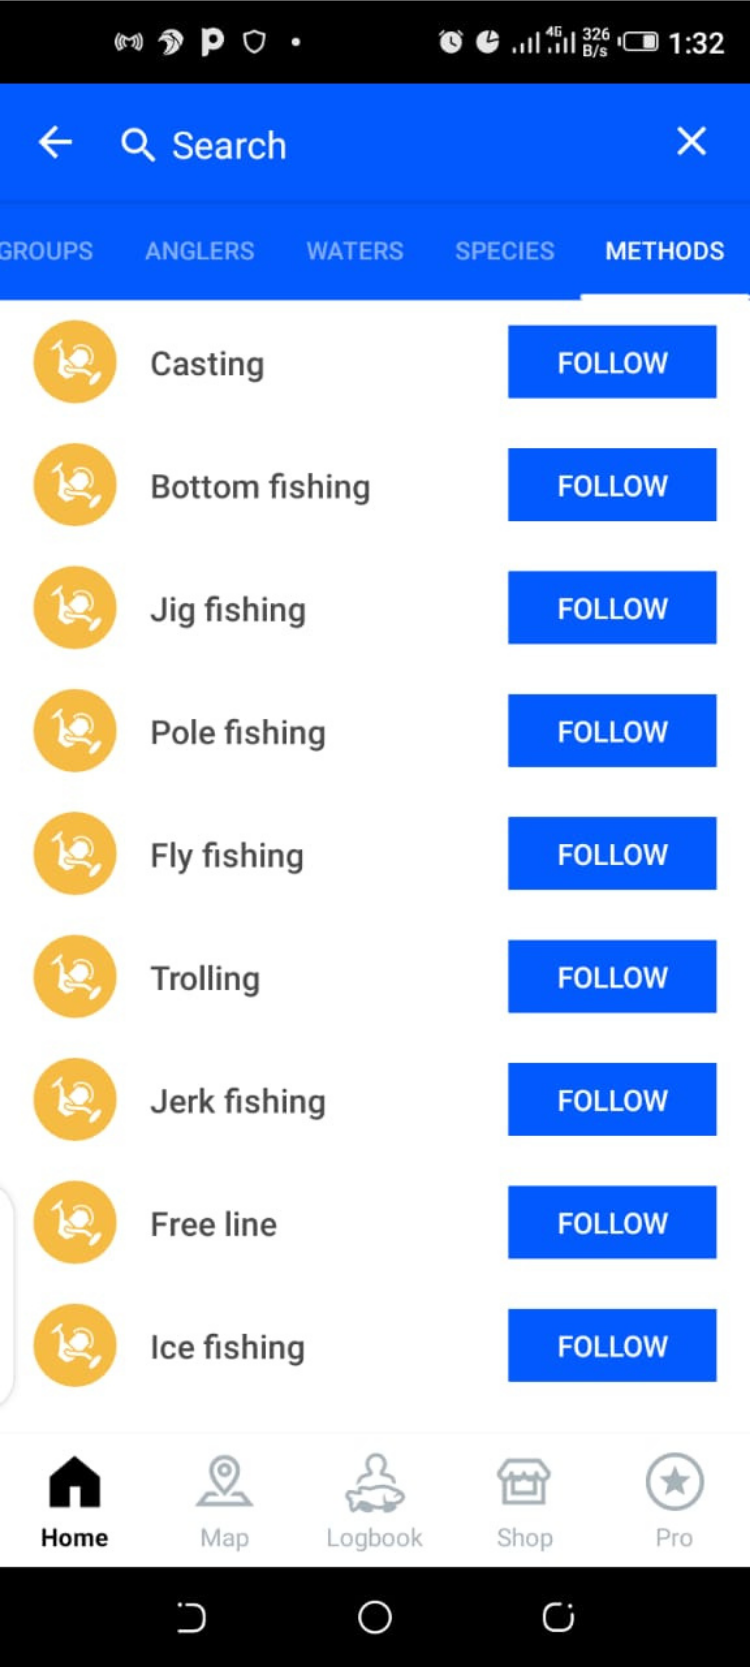 Fishbrain Fishing Methods